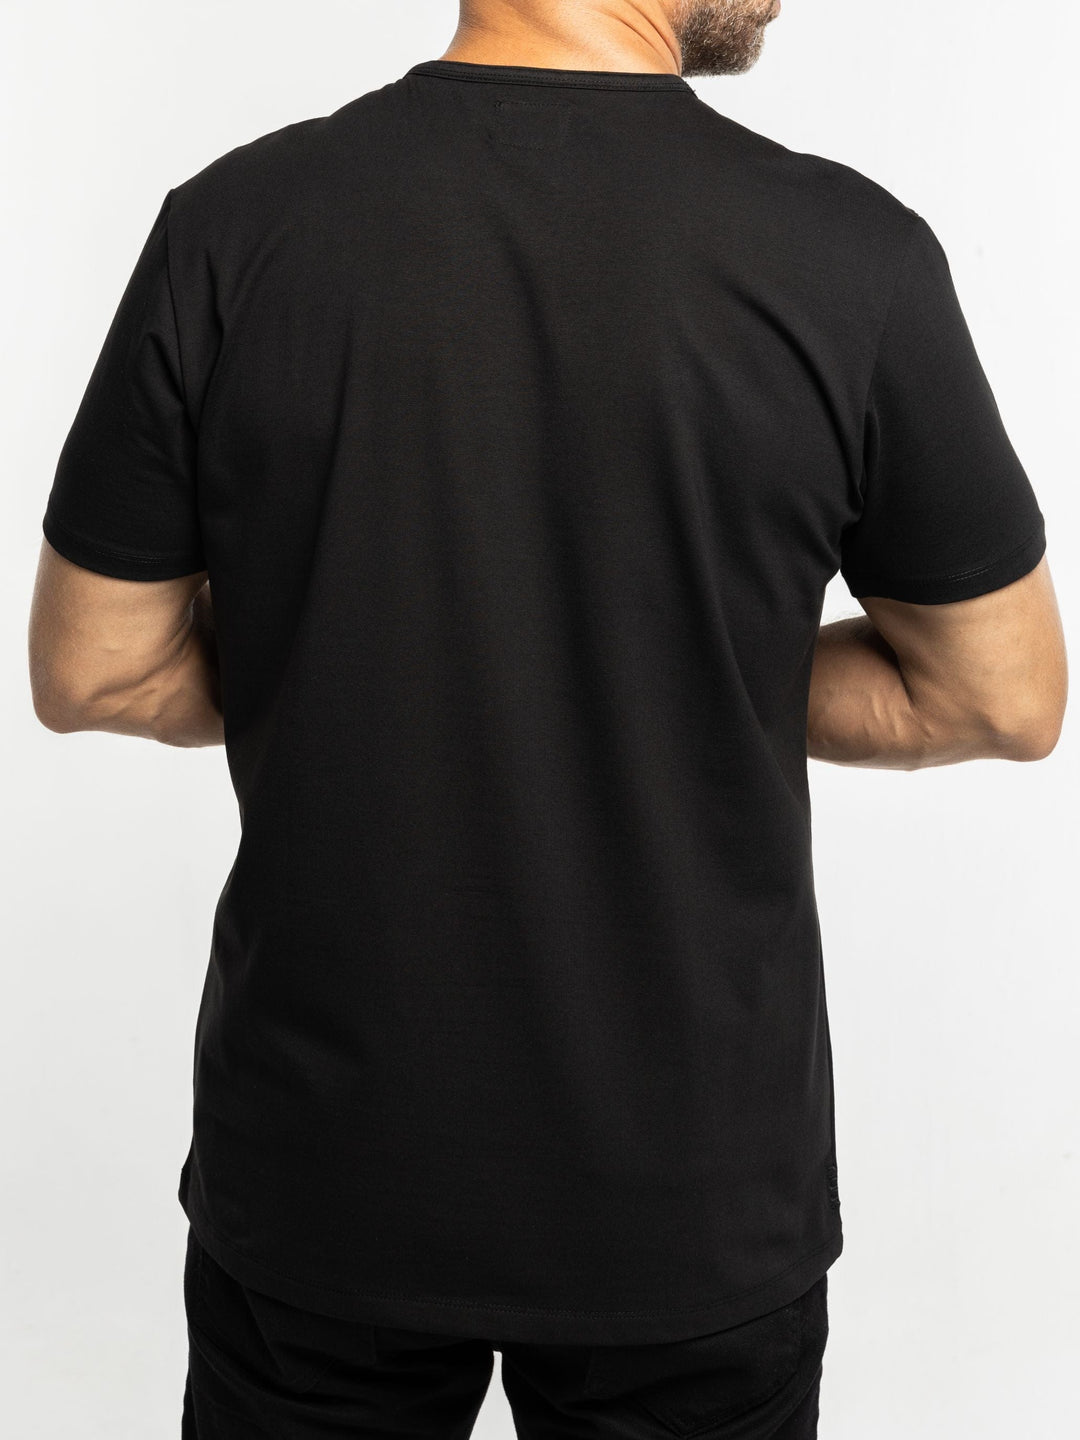 Zhivago x Nuuk Men T-shirt Black Straight Hem T-Shirt: SLS Comfort